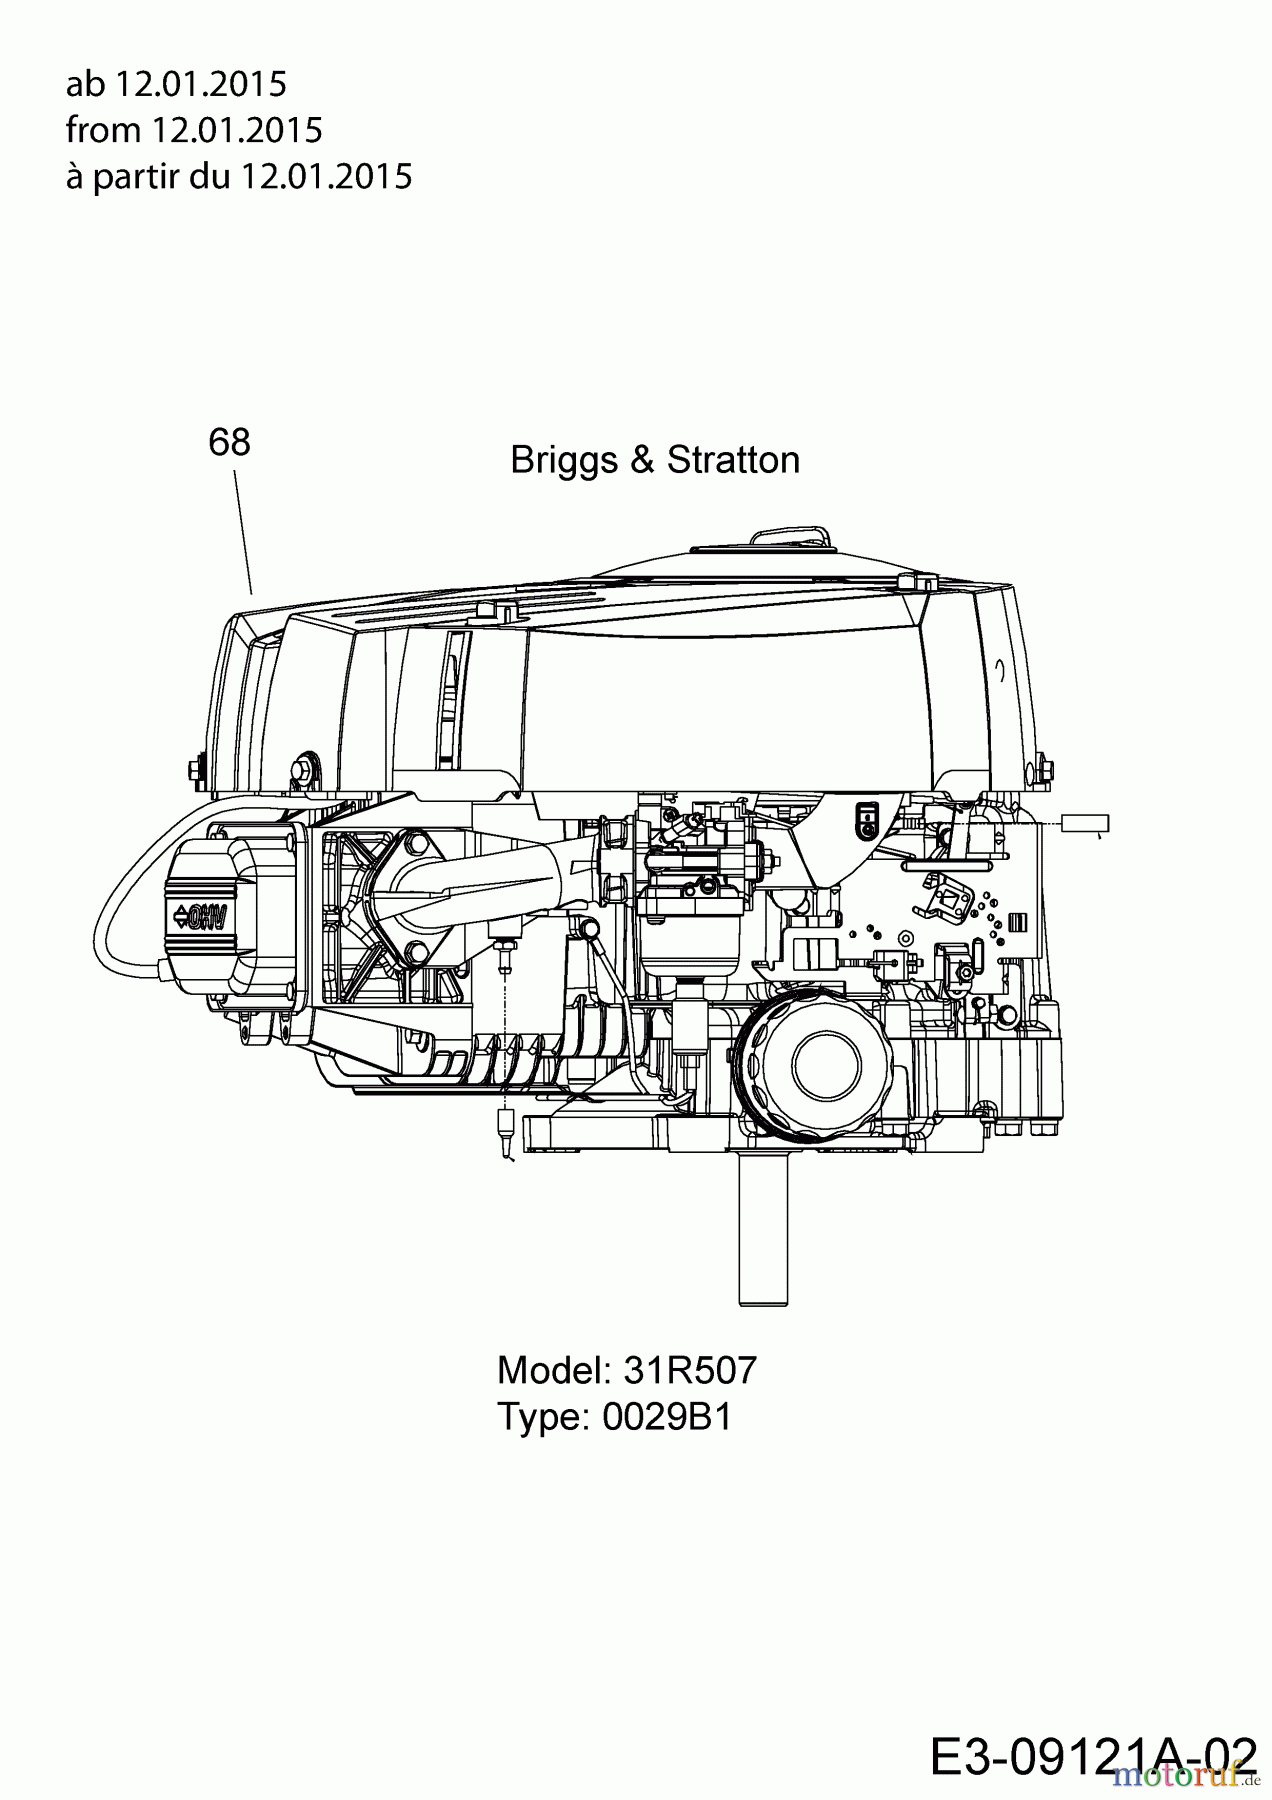  B Power Tracteurs de pelouse BT 155-92 AH 2 13HM71KE648  (2015) Moteur Briggs & Stratton ab 12.01.2015